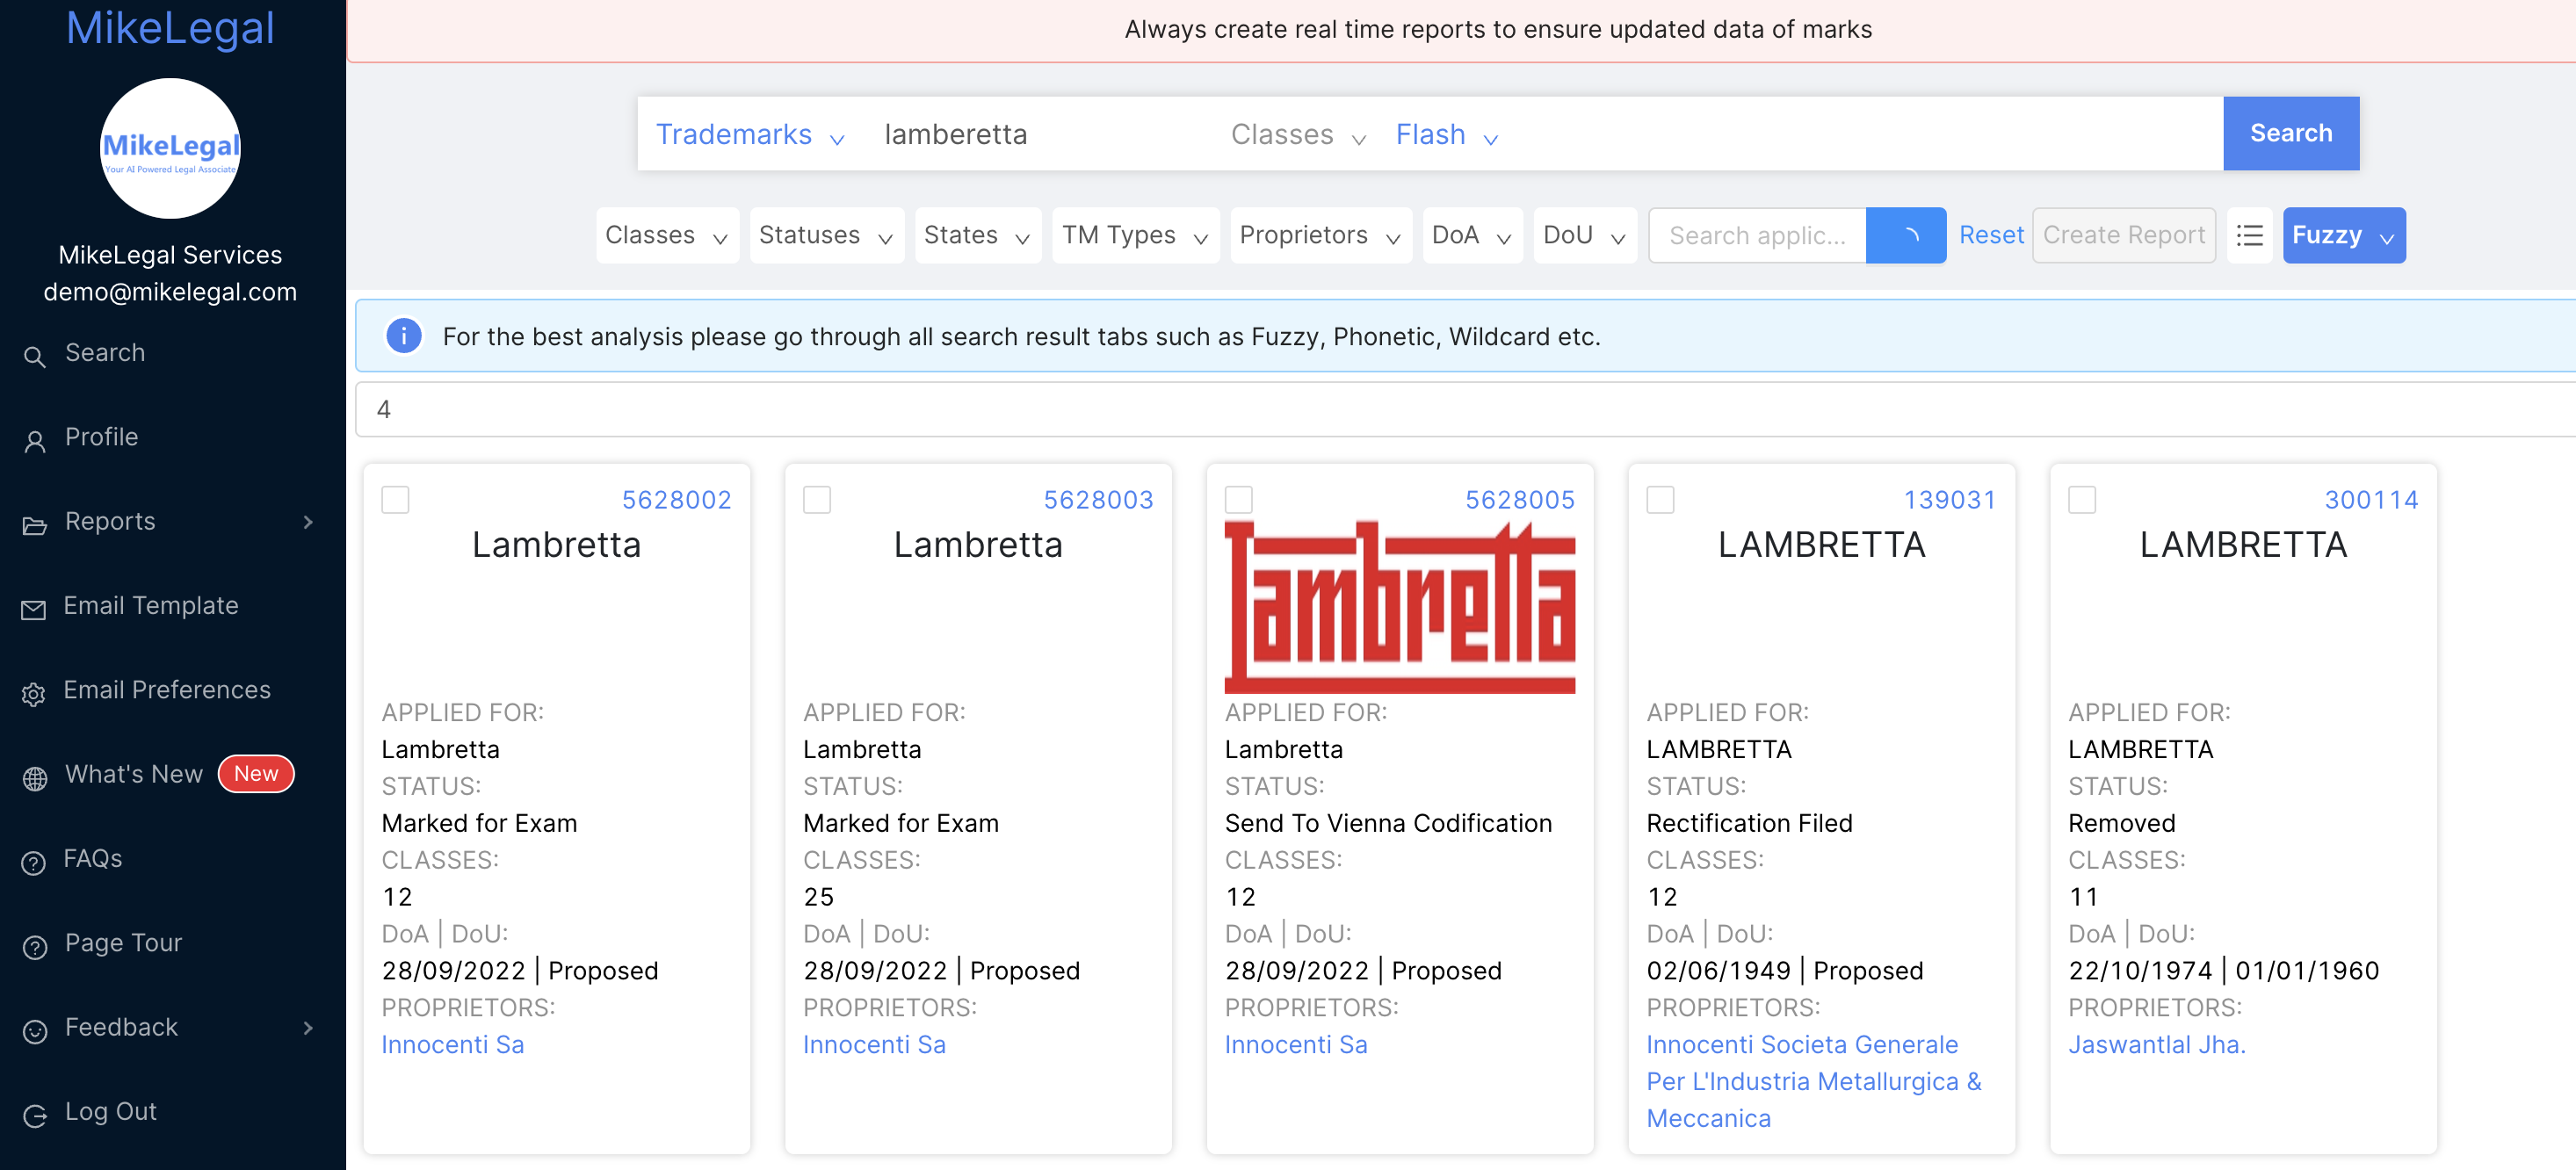 lambretta: Lambretta to re-enter Indian market in 2023, to launch